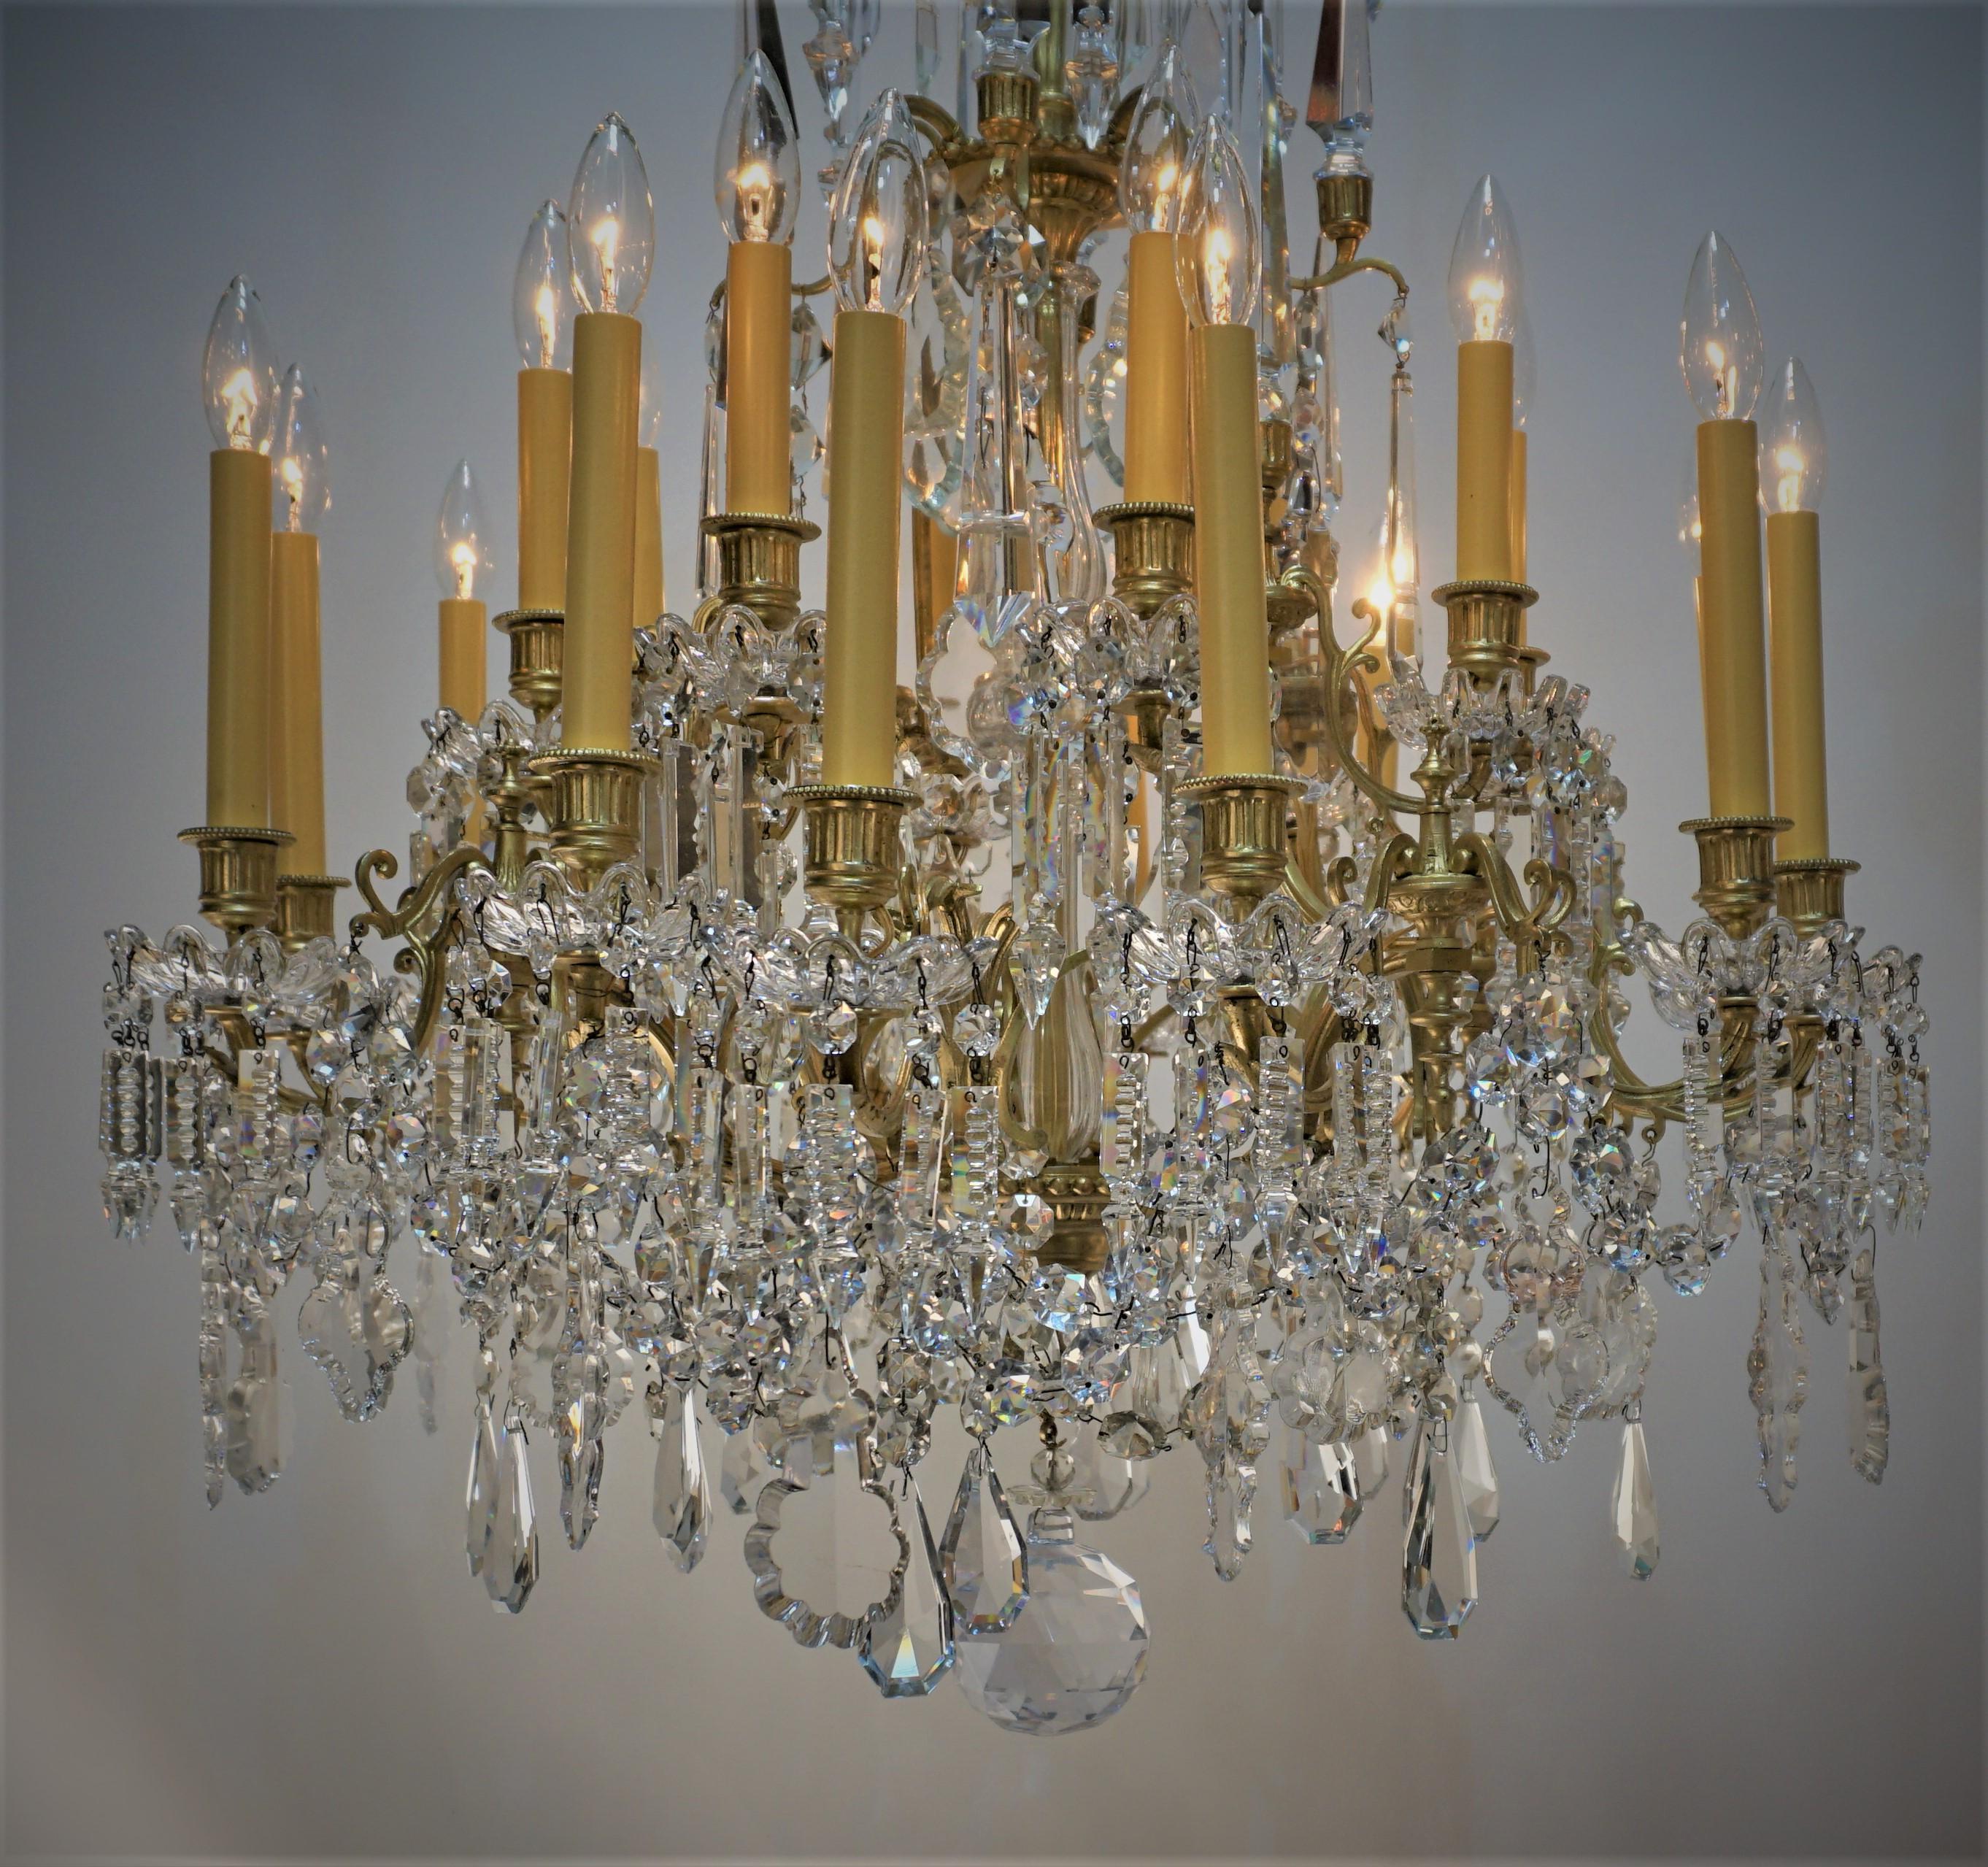 Elégant lustre électrifié du 19ème siècle à 20 lumières en cristal et bronze.
Mesures : 31